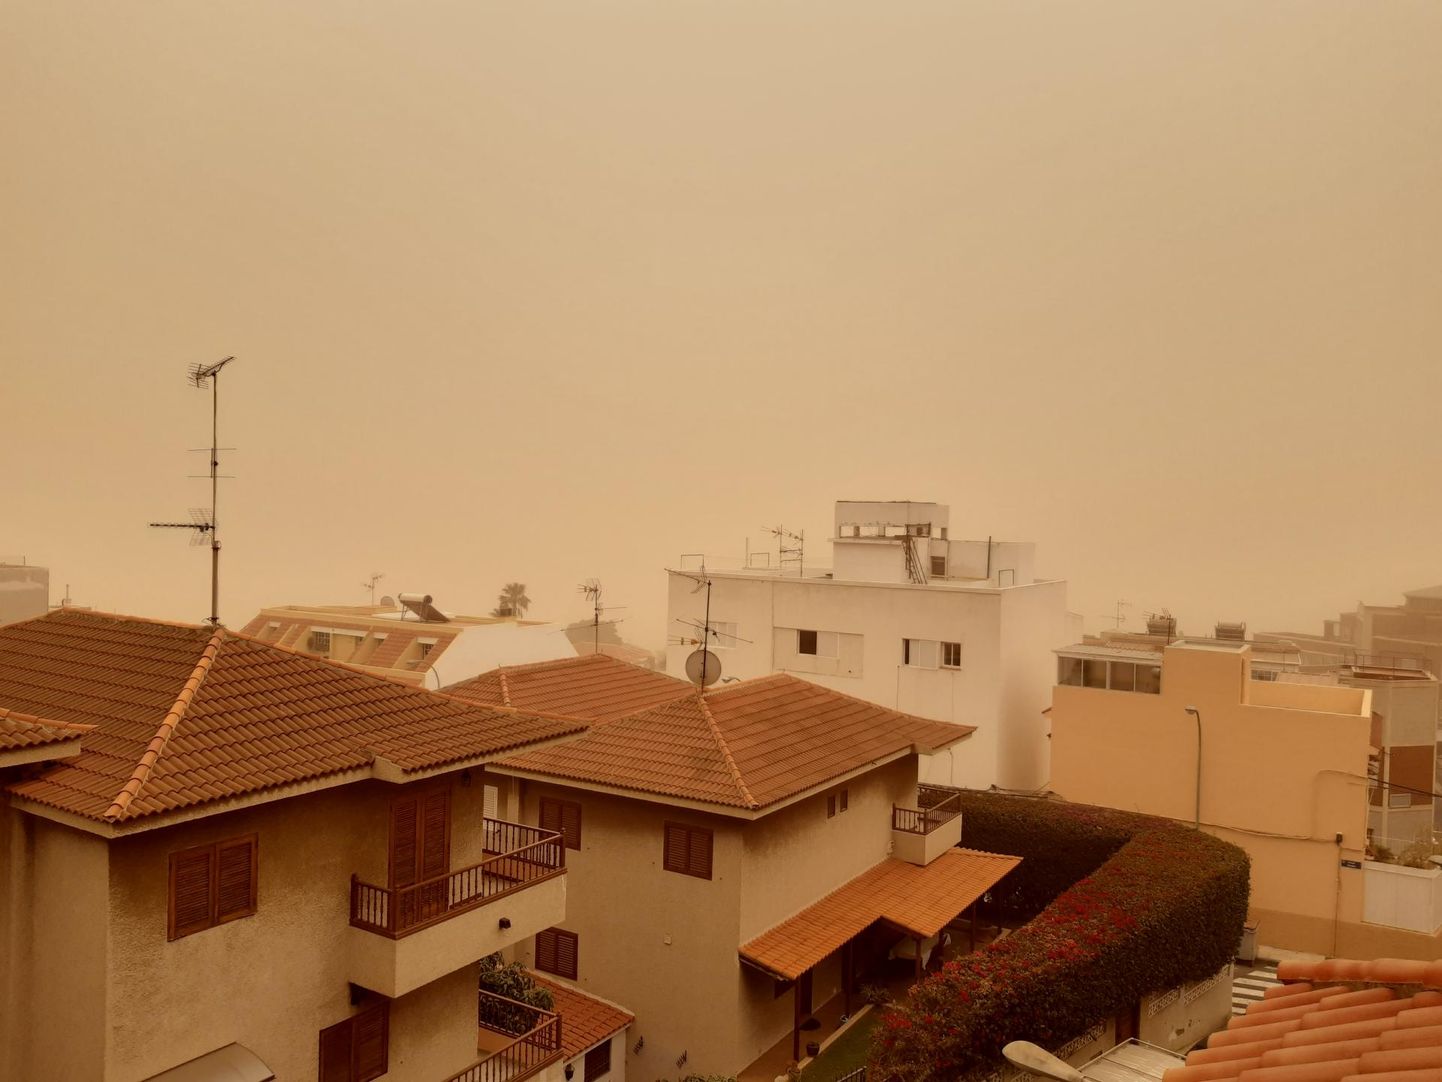 Perega Tenerifel puhkava Kari Maripuu sõnutsi meenutas liivatormi ajal avanenud vaade Marssi.